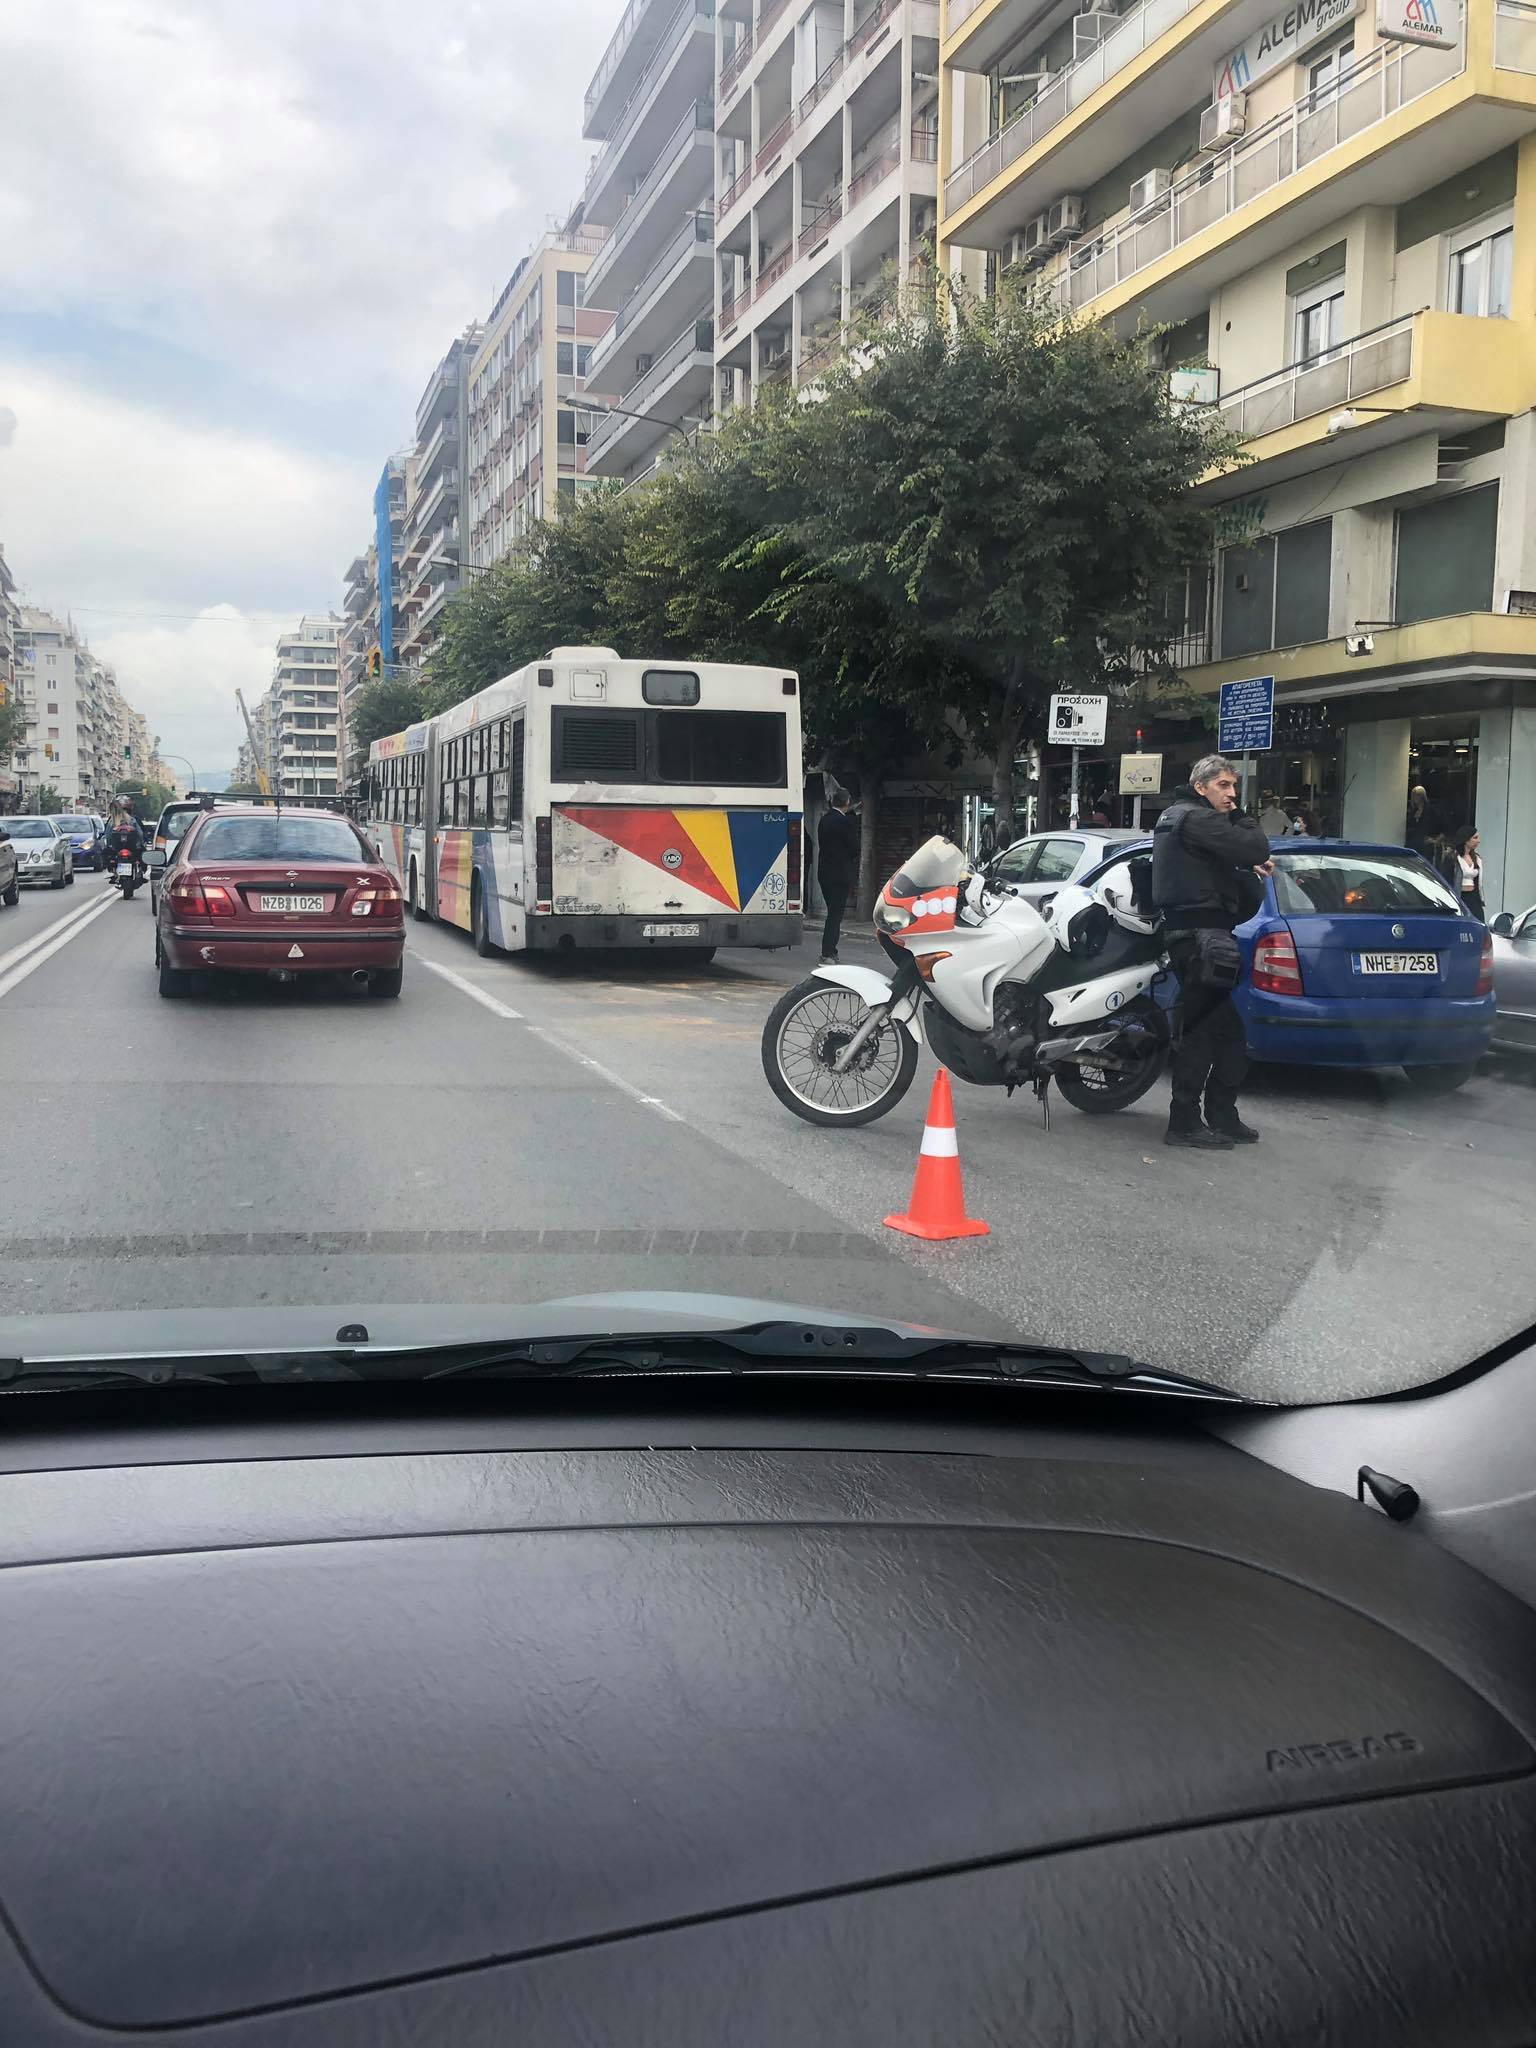 Κέντρο Θεσσαλονίκης: Αν δεν έχετε σοβαρή δουλειά μην πλησιάζετε αύριο-Ανακοίνωση της Τροχαίας